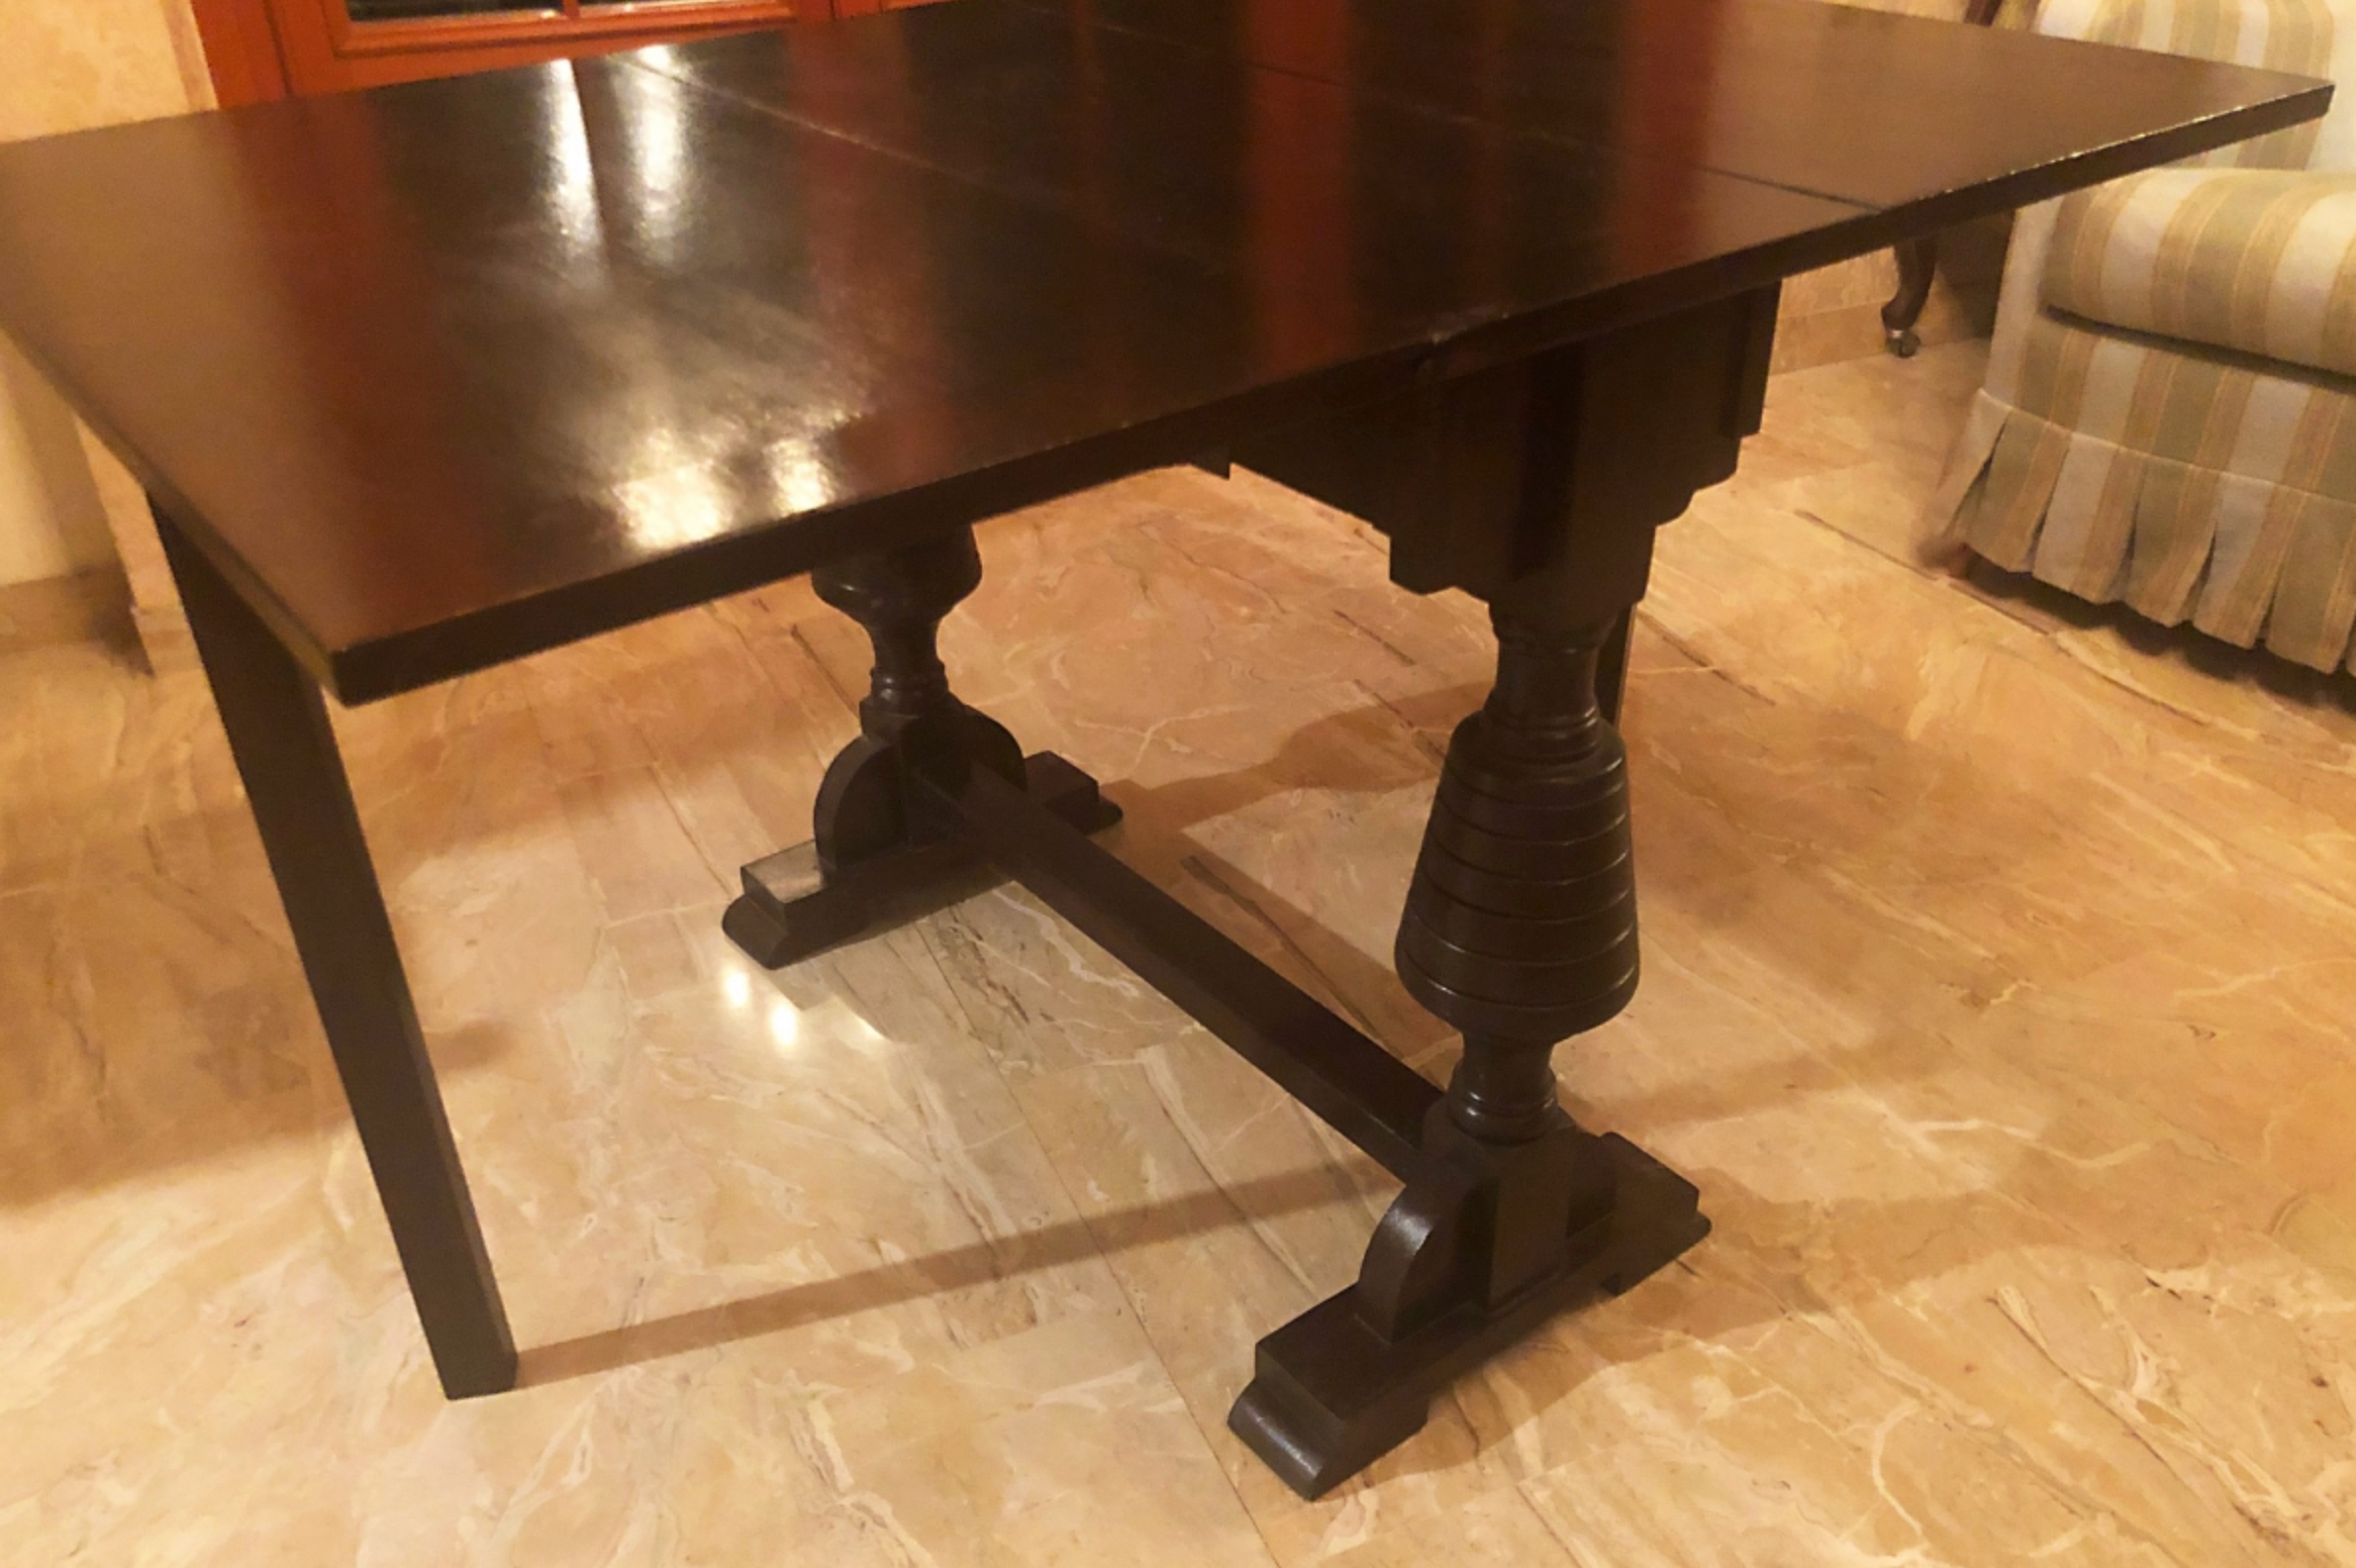 Originale tavolino in rovere a bandelle